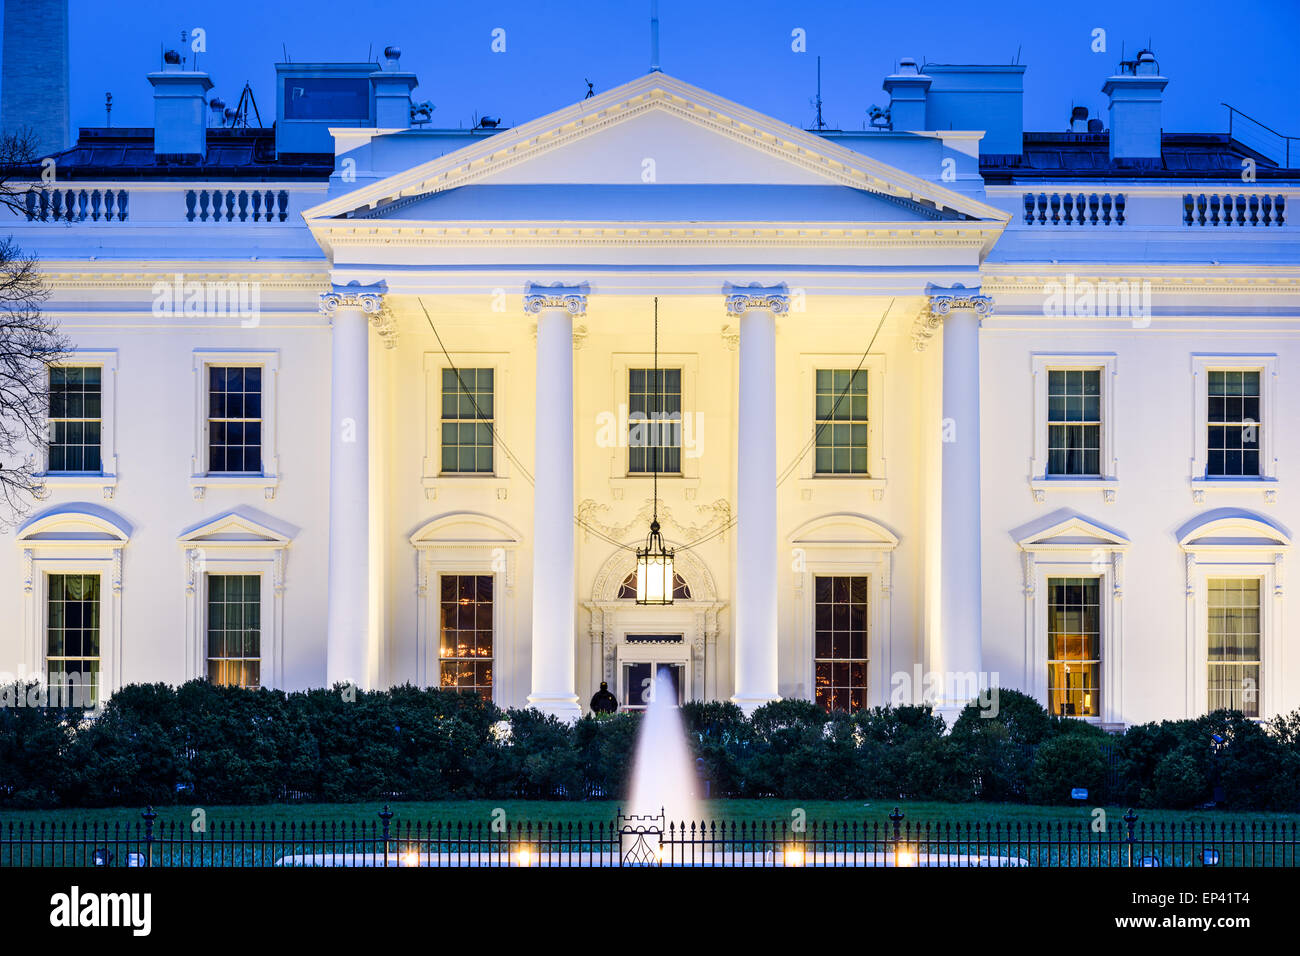 Washington, DC at the White House. Stock Photo